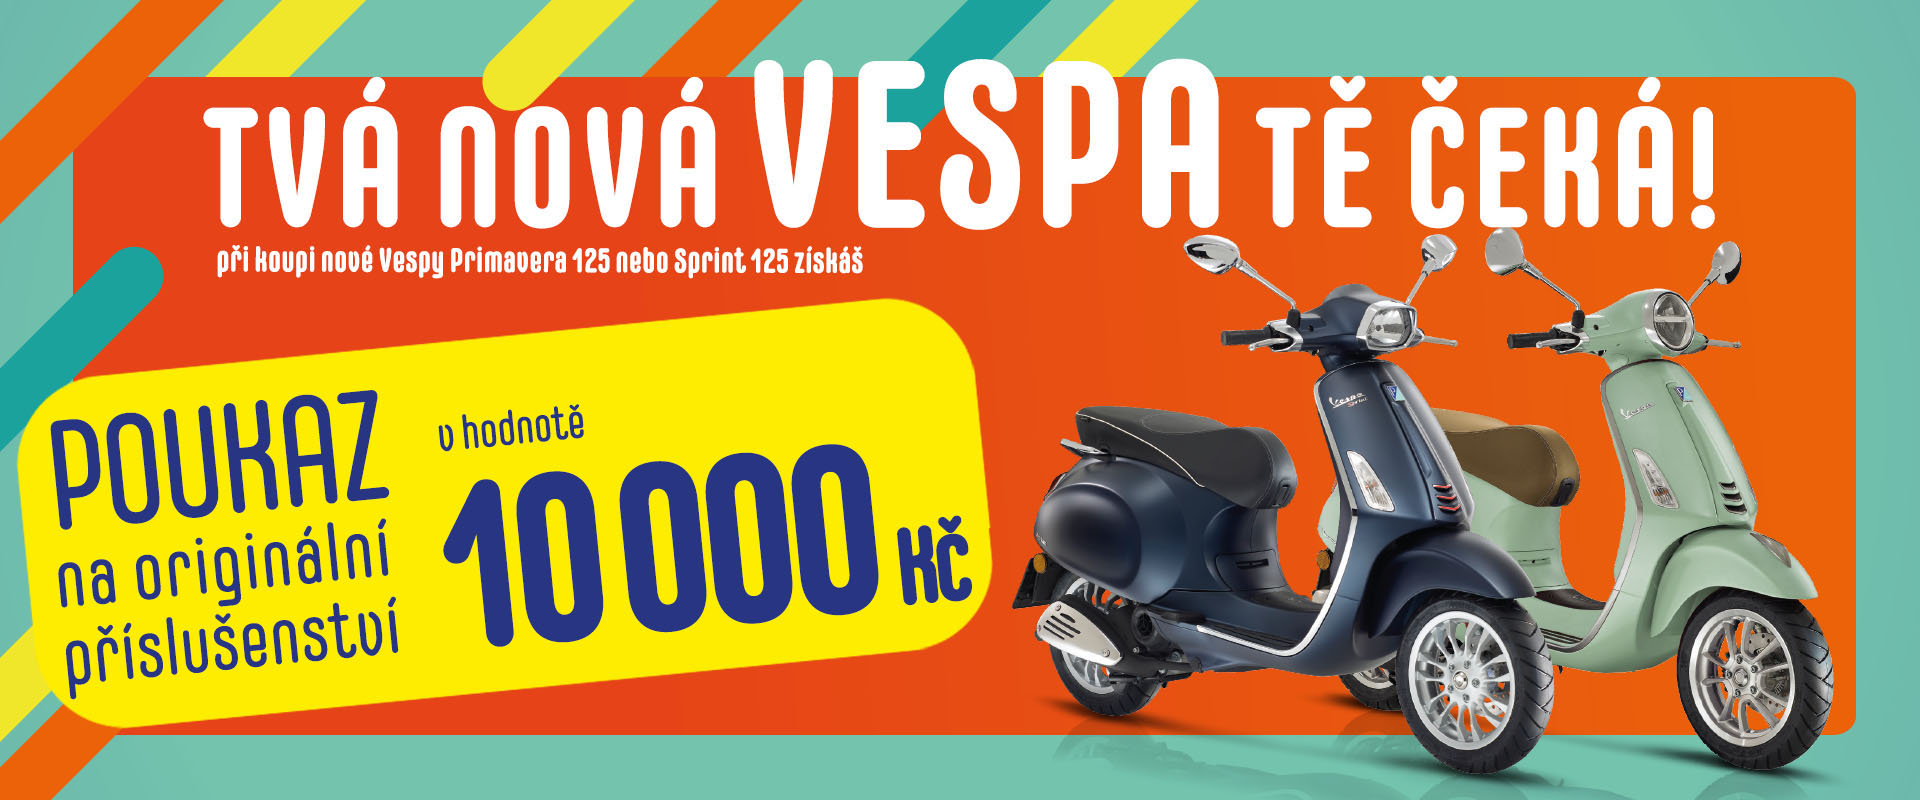 Doprodej motocyklů Vespa a Piaggio